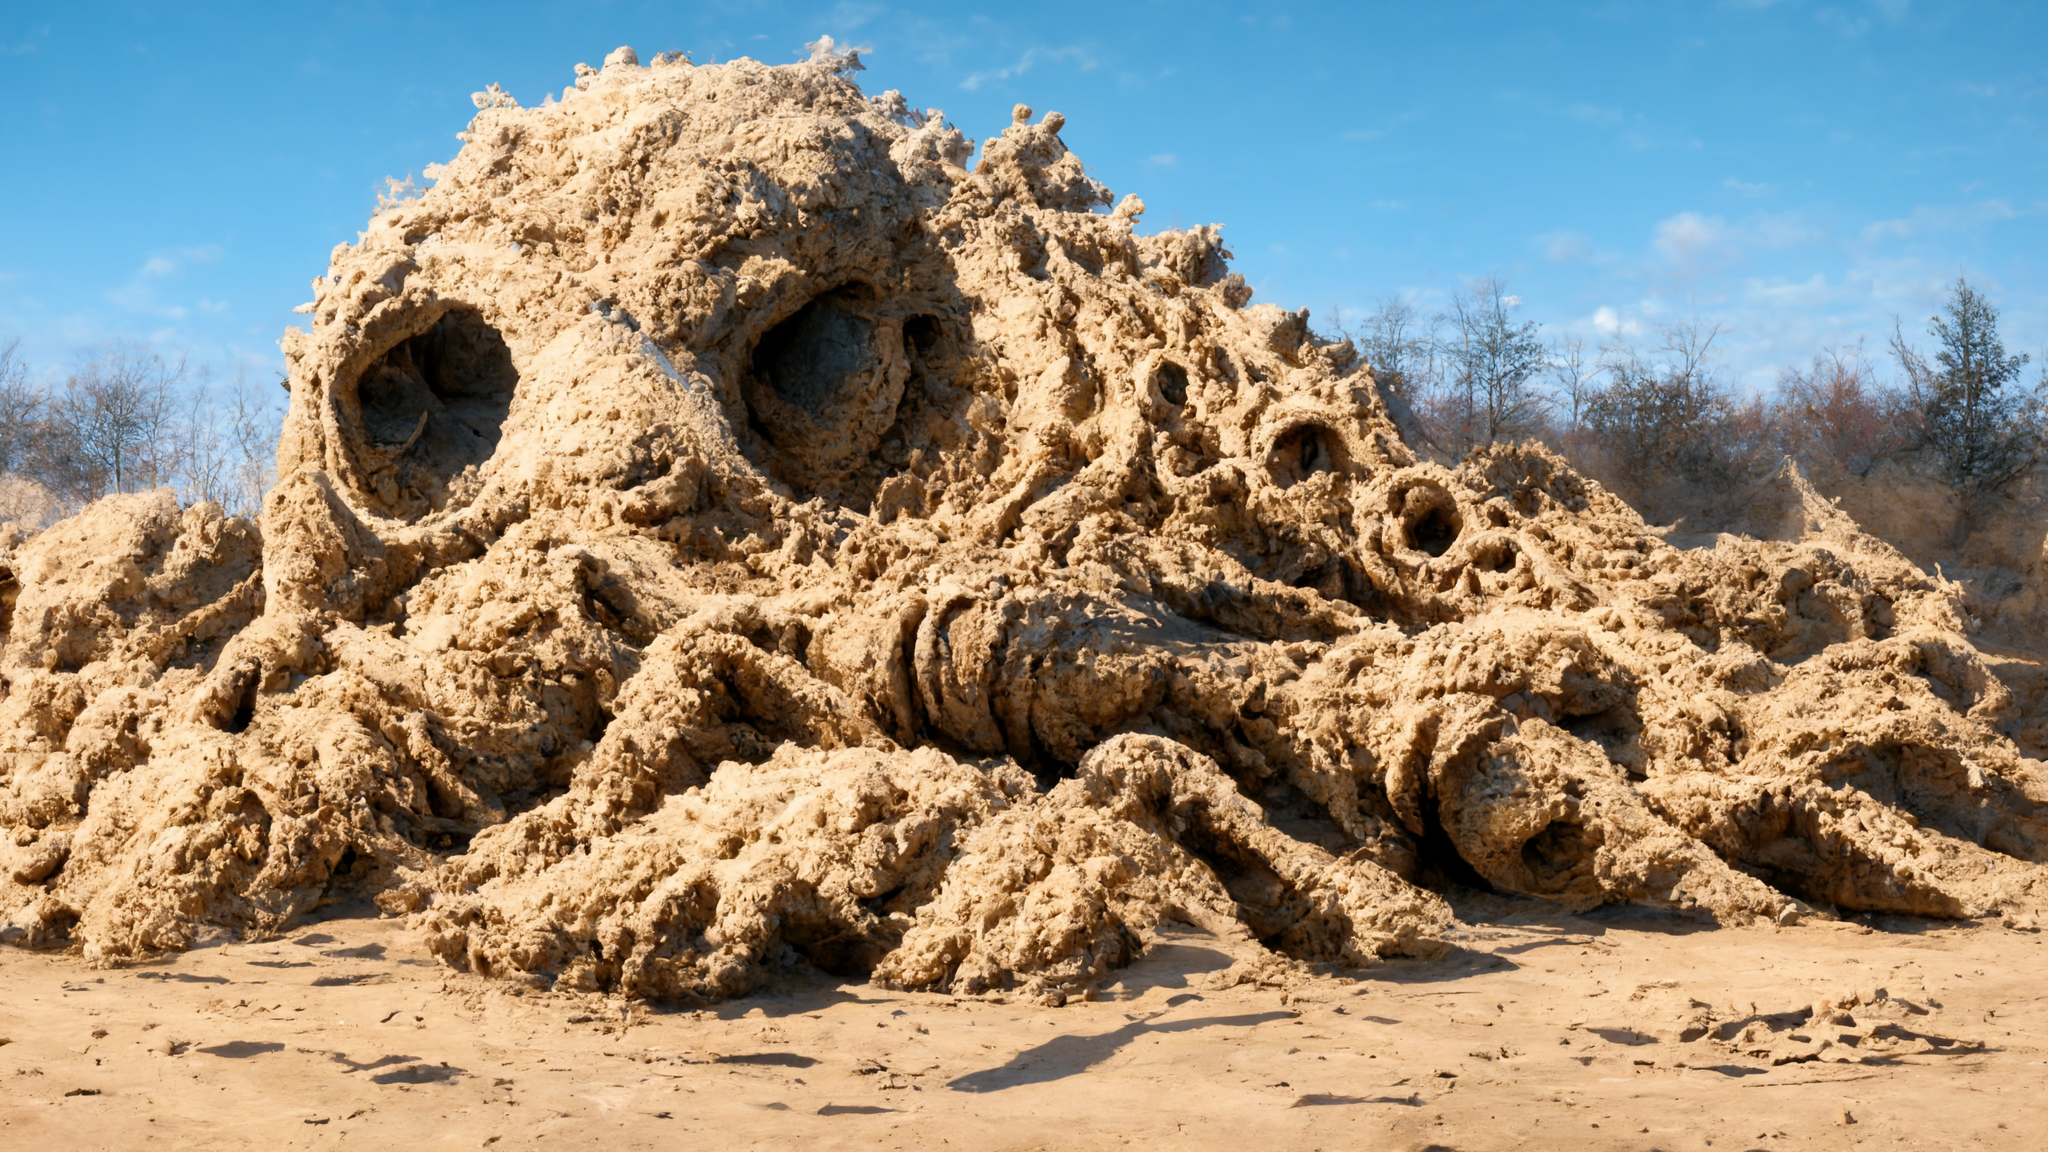 Sand Covered Desert Landscape Artwork 2048x1152